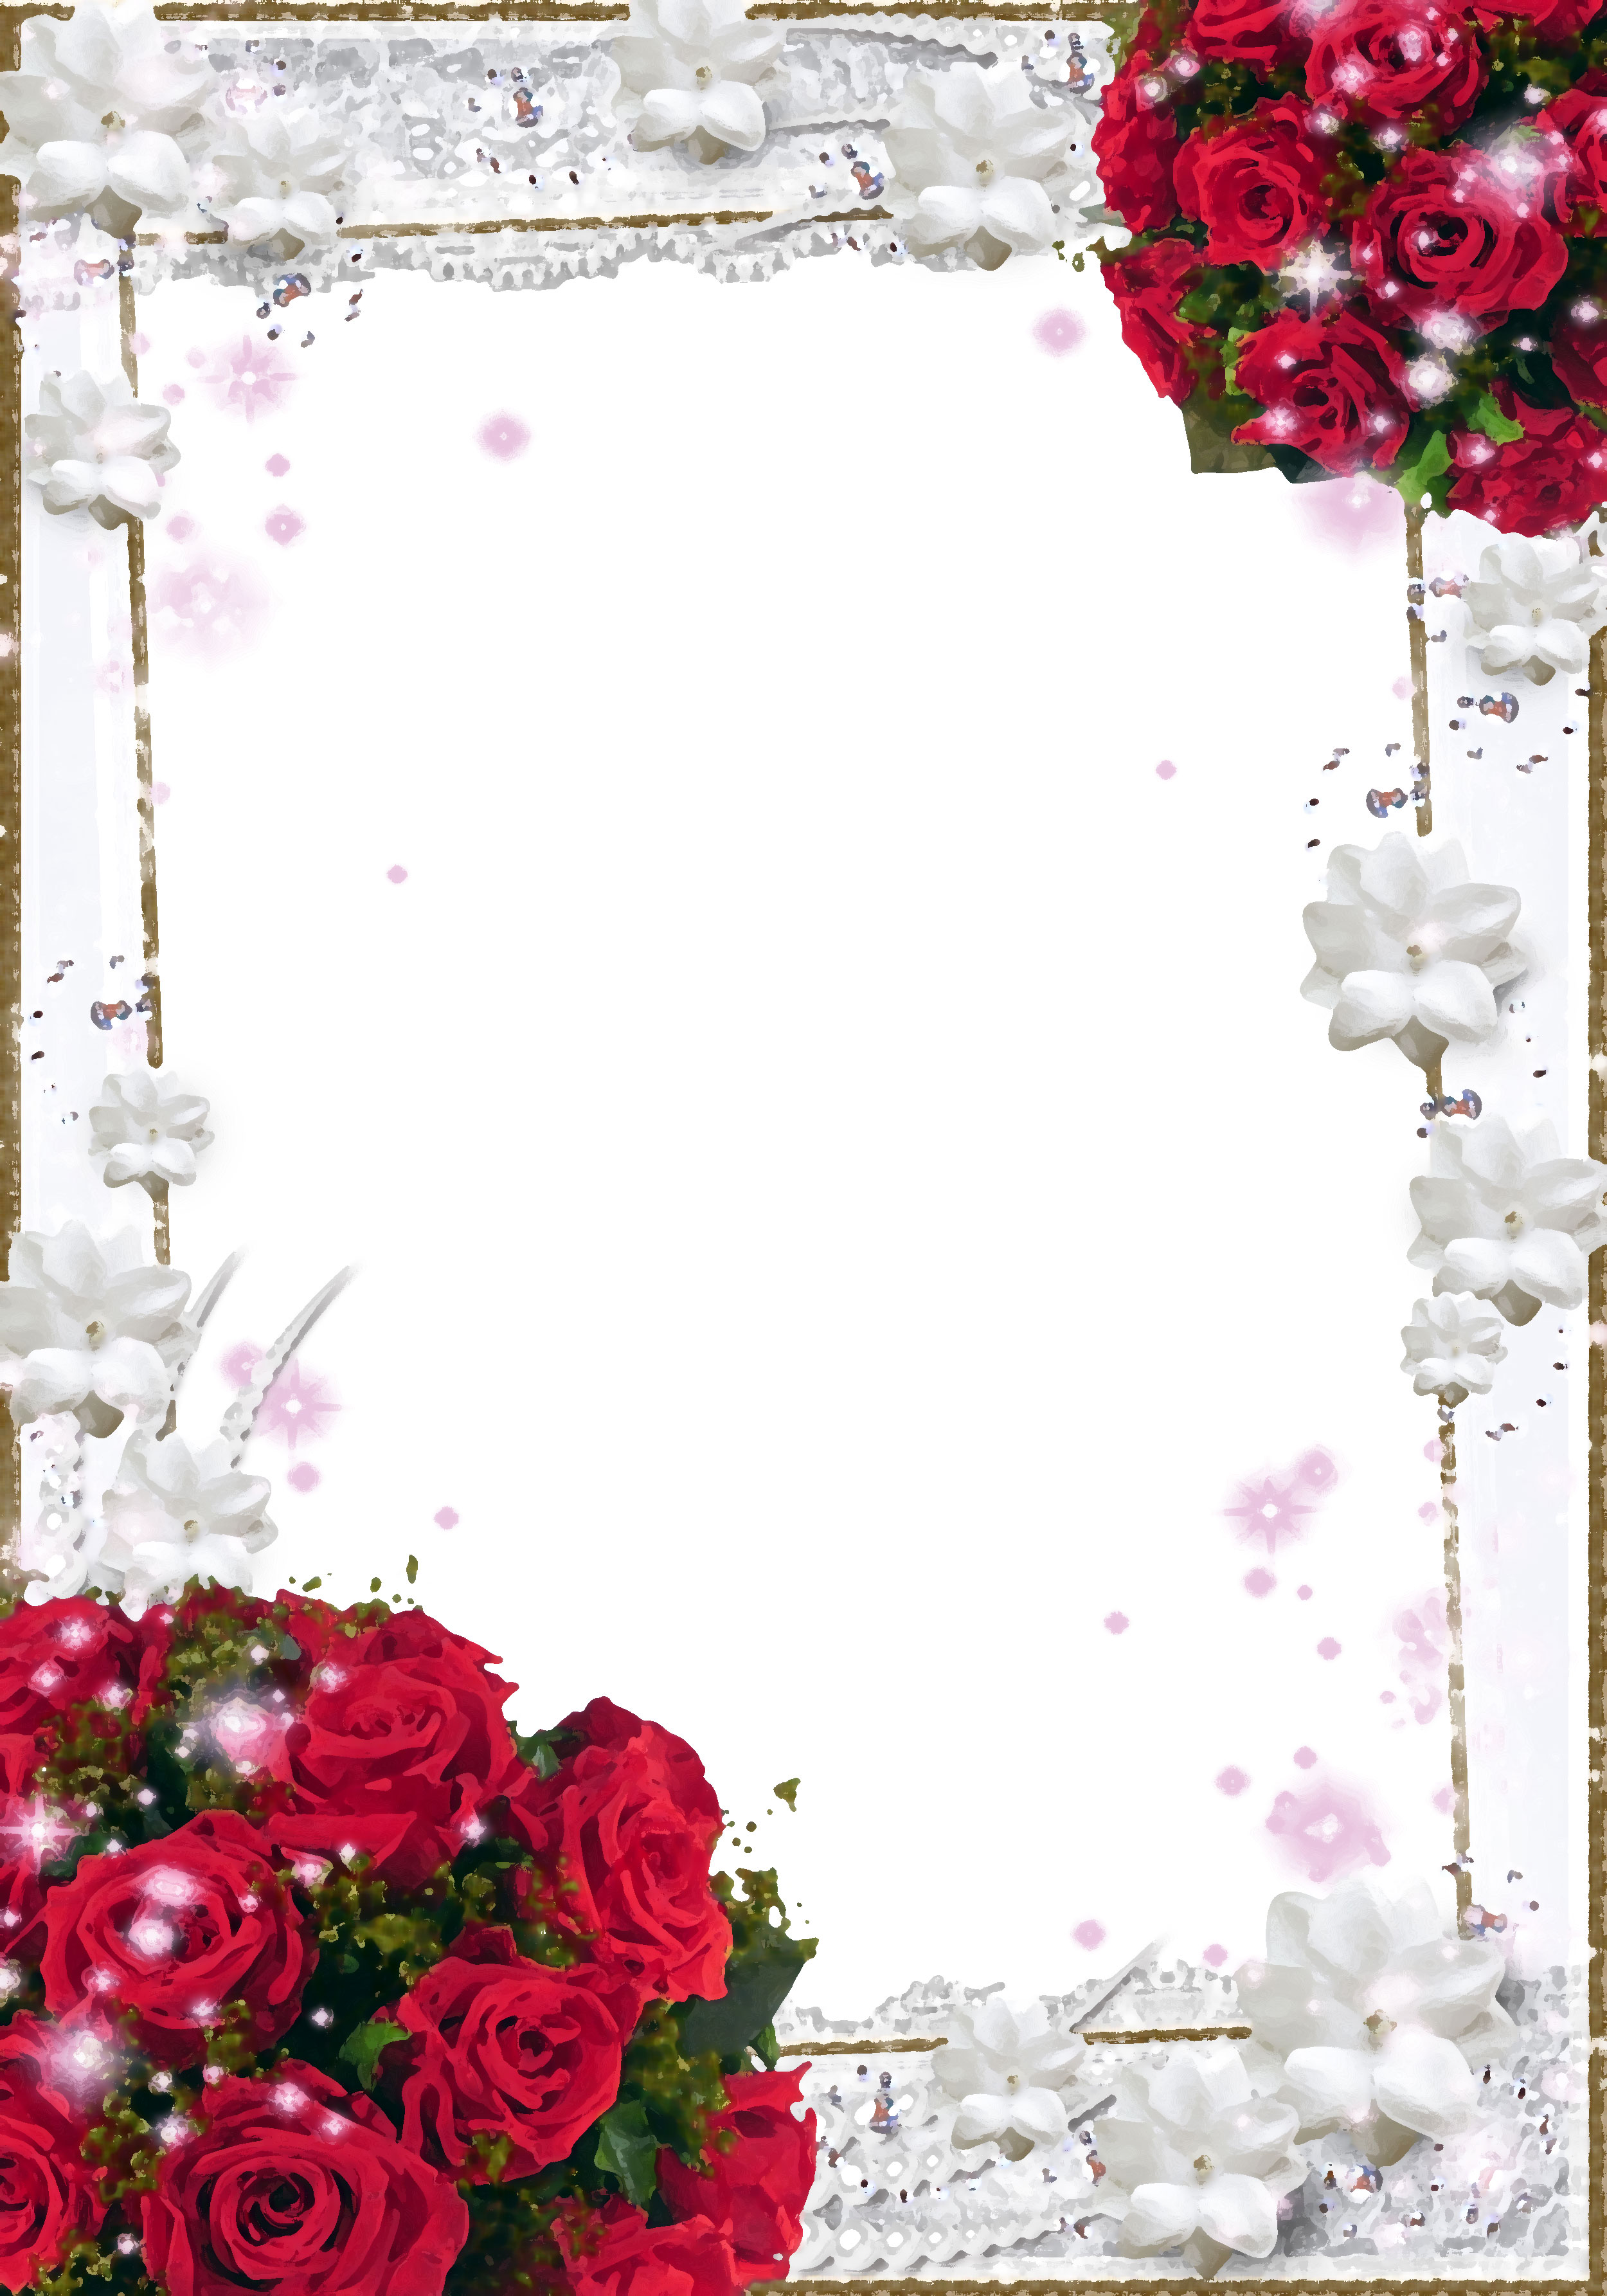 壁紙 背景イラスト 花のフレーム 外枠 No 108 赤バラの束 真珠 白